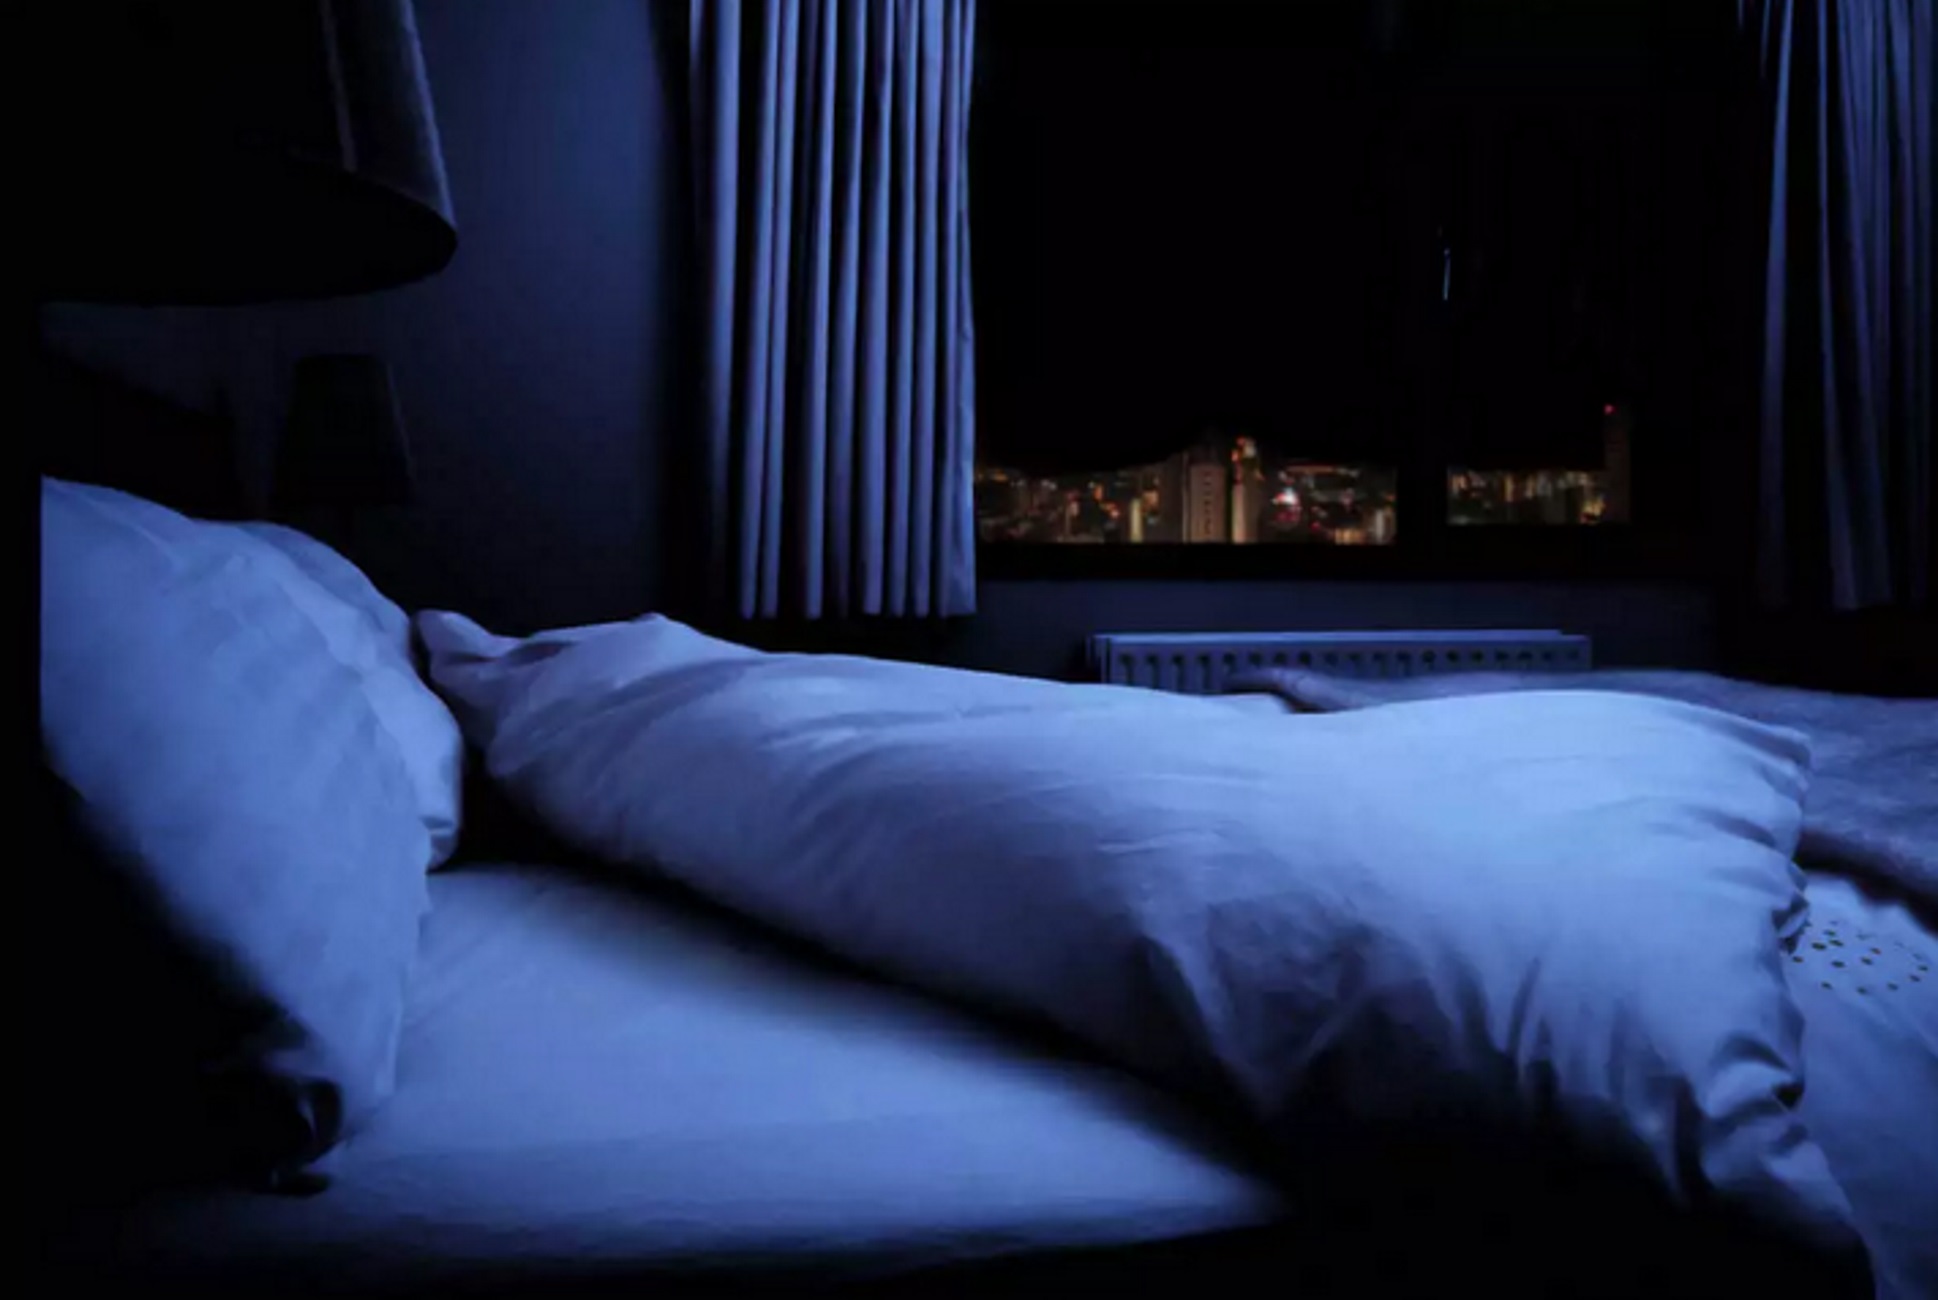 Ρέθυμνο: Νεκρός το Πάσχα στο δωμάτιο του ξενοδοχείου που έμενε